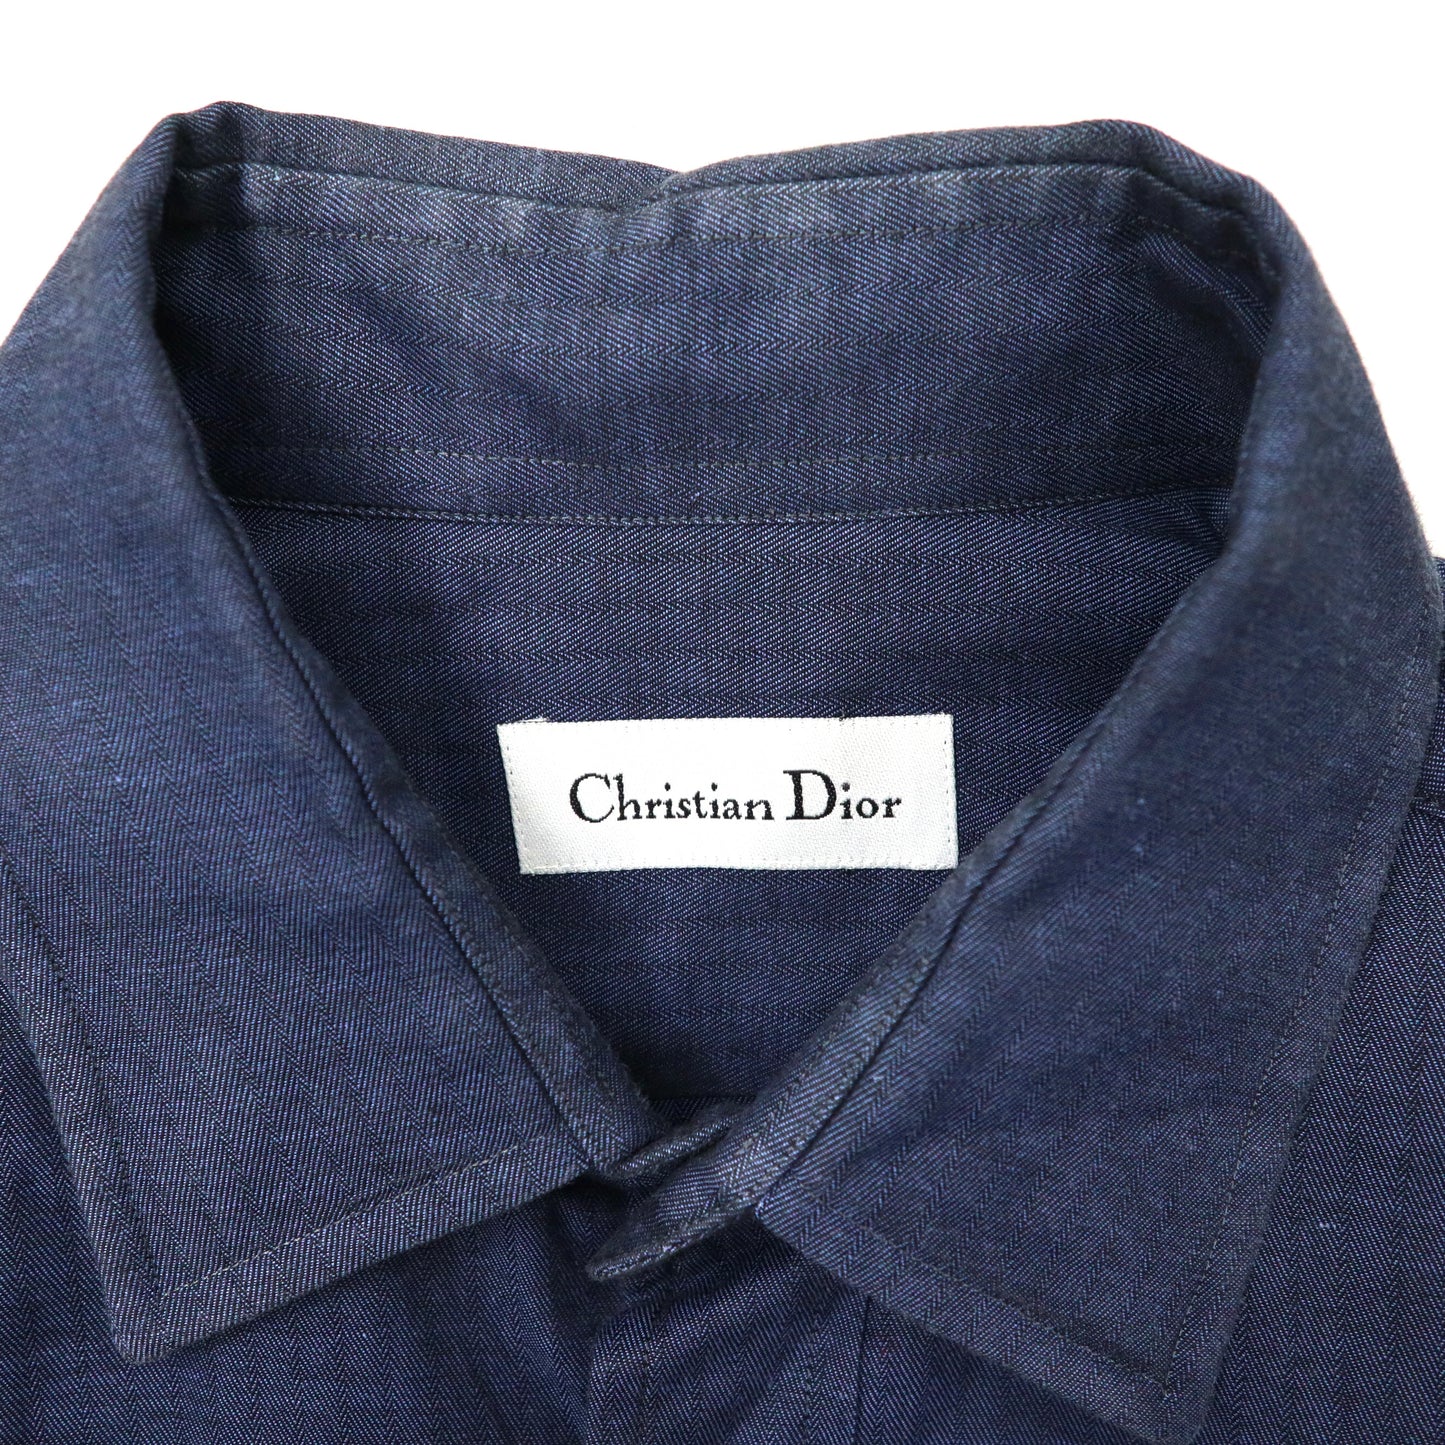 Christian Dior ドレスシャツ L ネイビー コットン 日本製